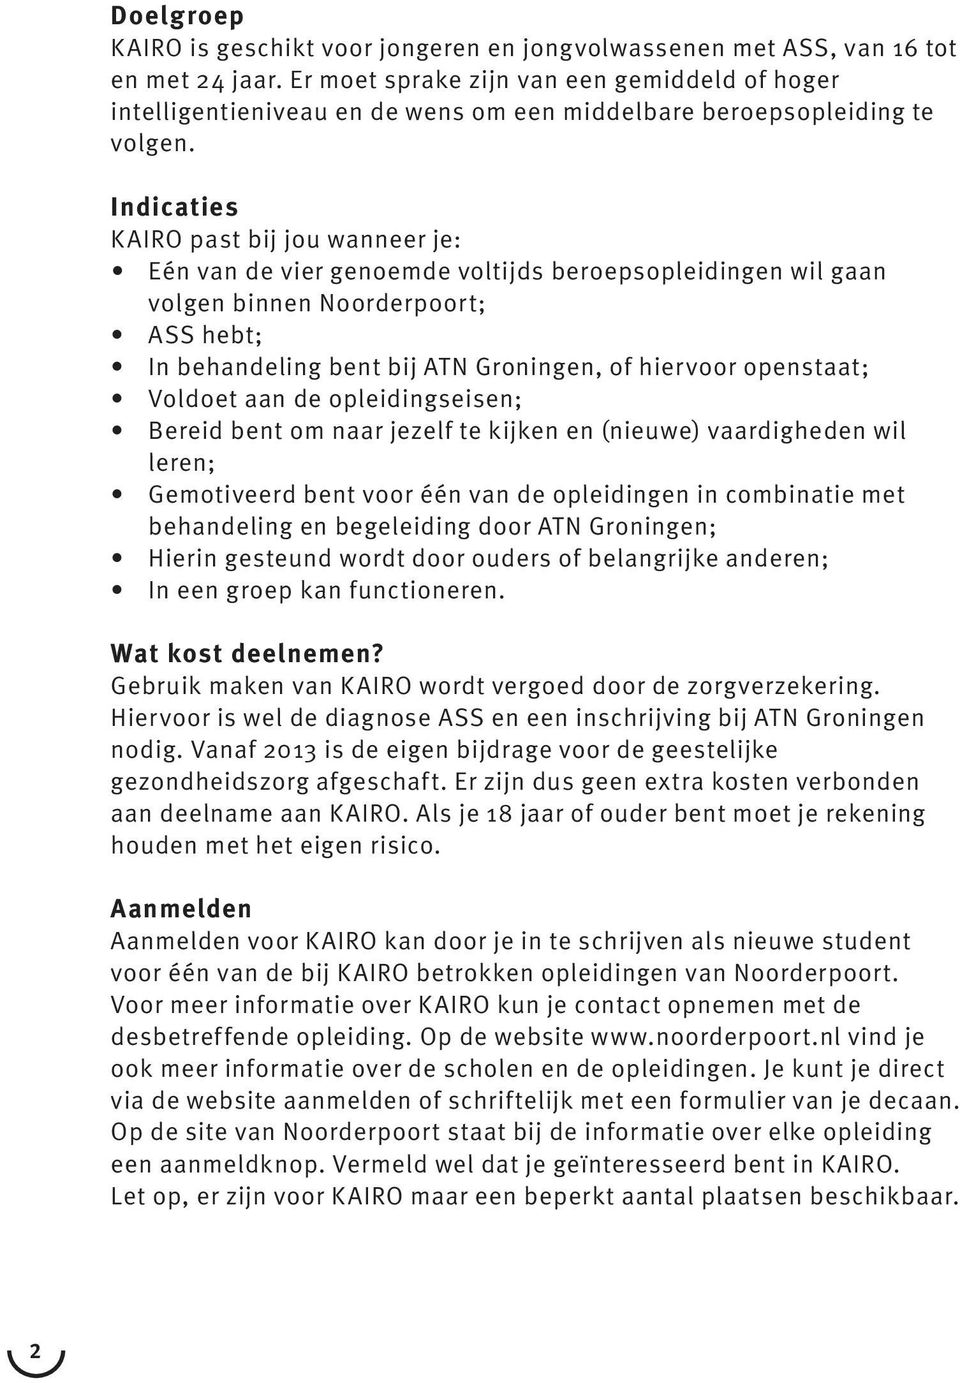 Indicaties KAIRO past bij jou wanneer je: Eén van de vier genoemde voltijds beroepsopleidingen wil gaan volgen binnen Noorderpoort; ASS hebt; In behandeling bent bij ATN Groningen, of hiervoor